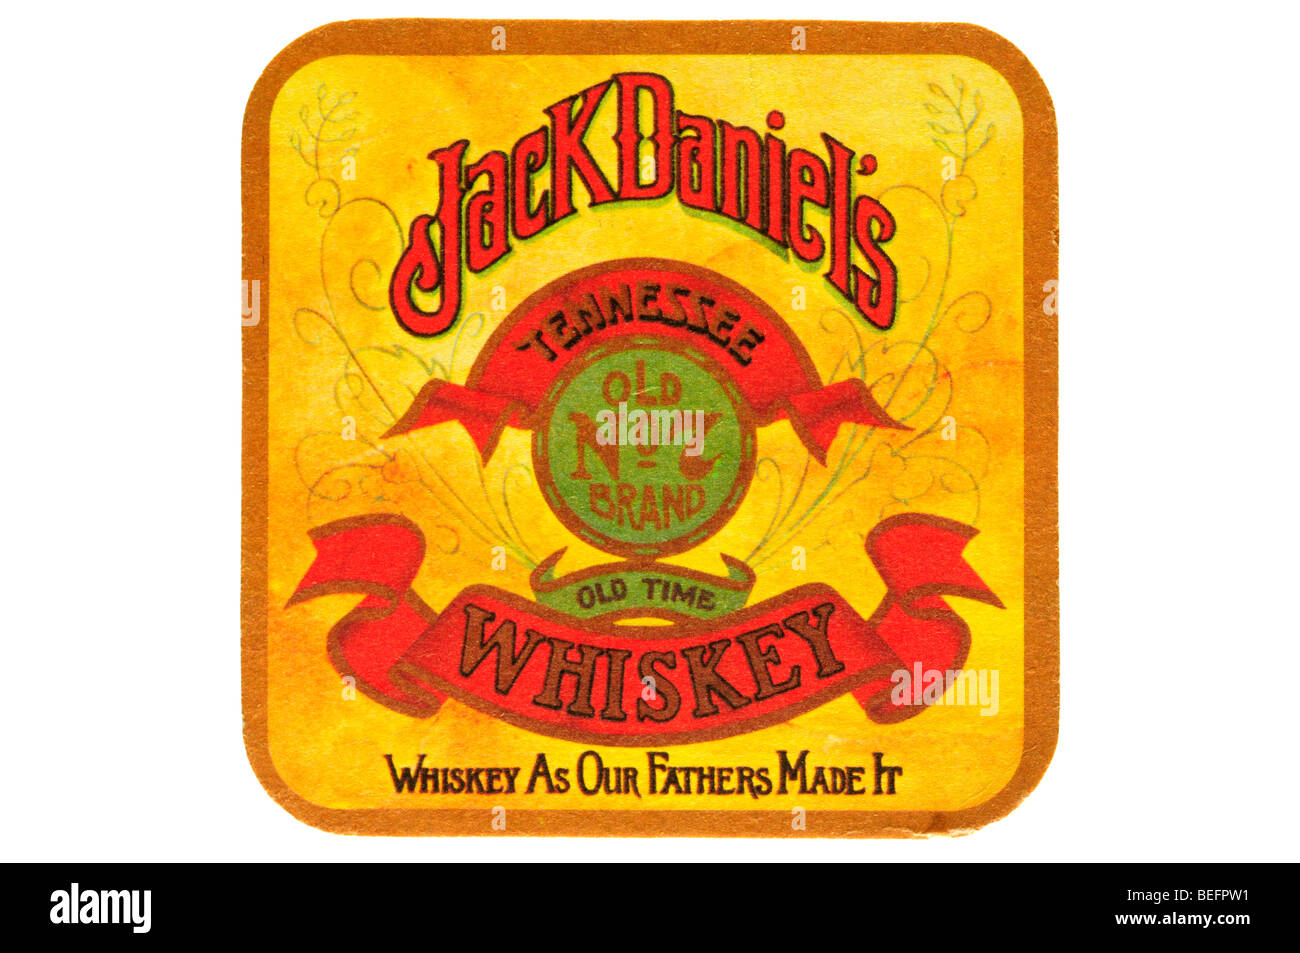 Jack Daniels vecchia n. 7 brand vecchio tempo Tennessee whiskey whiskey come i nostri padri hanno reso Foto Stock